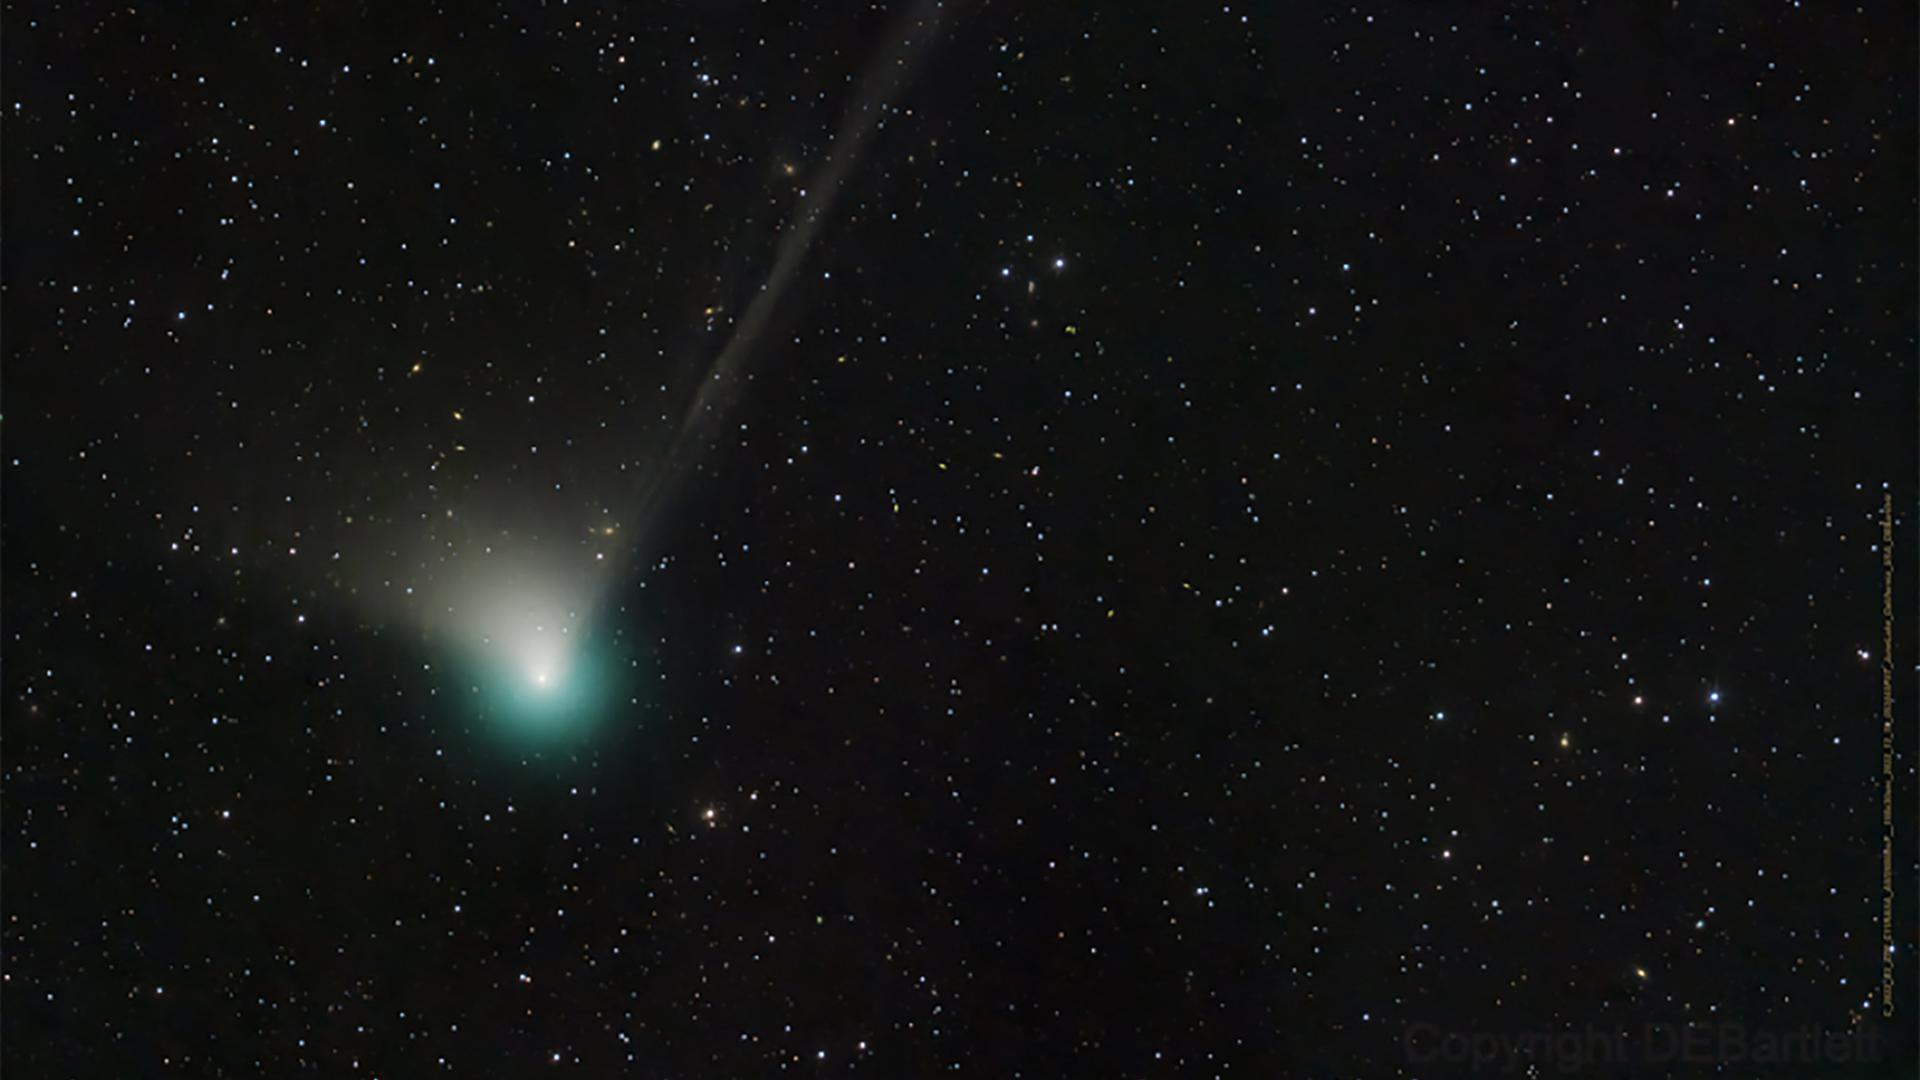 Sehr weit gereist: Der Komet C/2022 E3 (ZTF) hat die Umgebung der Erde zuletzt vor etwa 50.000 Jahren besucht und nähert sich gerade unserem Planeten. Noch bis Mitte Februar wird er gut zu beobachten sein, ehe er dann vielleicht für immer verschwindet. 